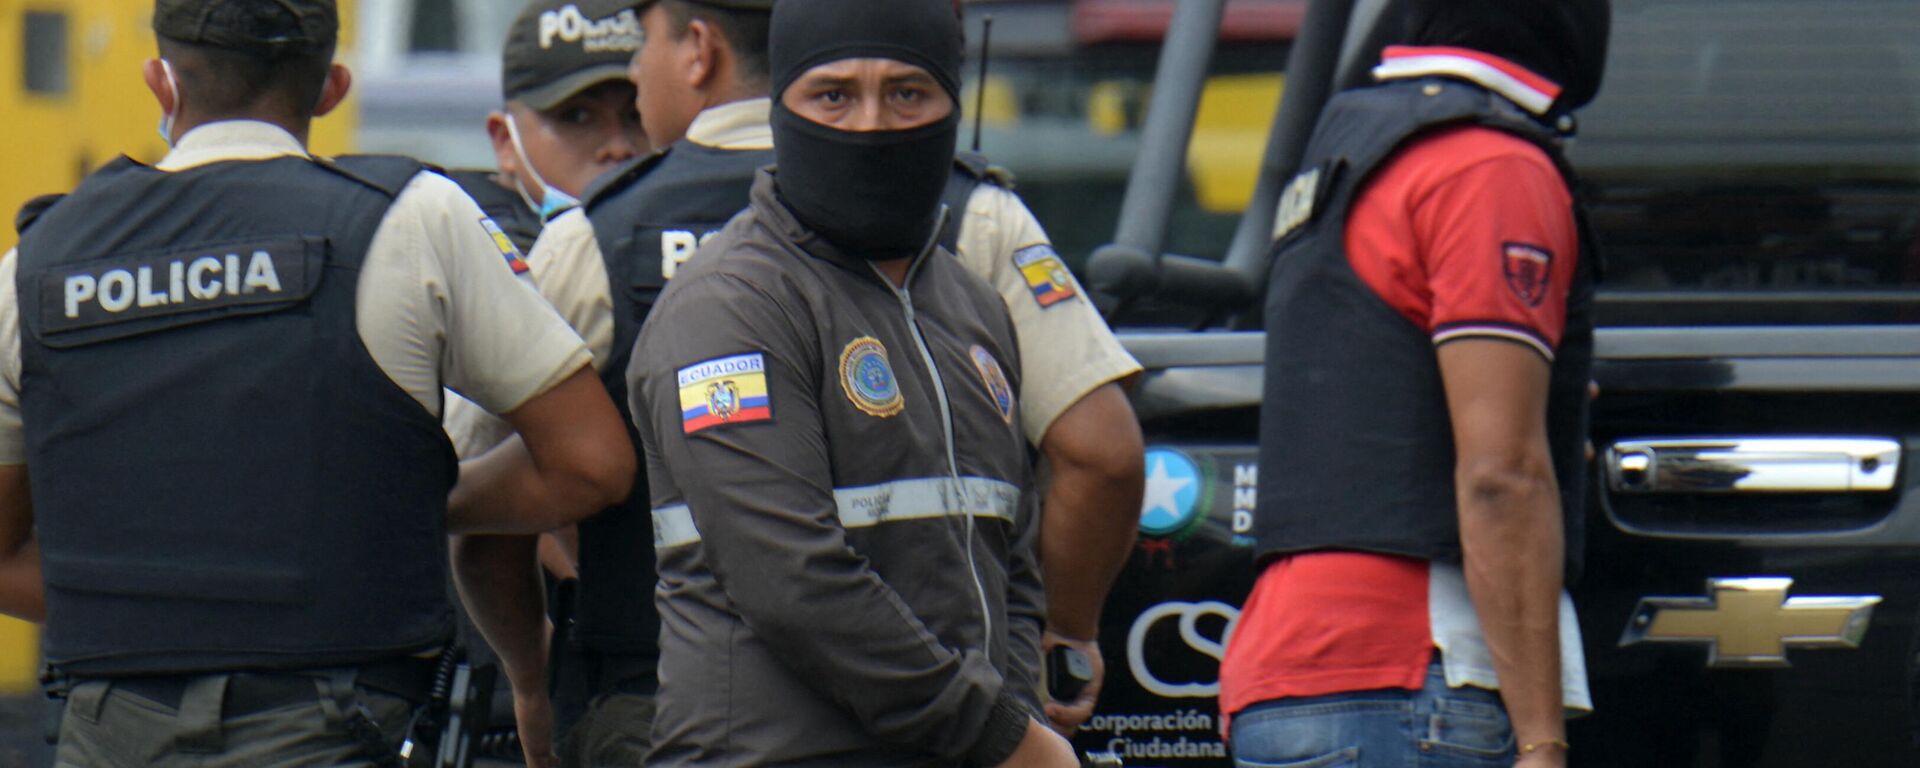 Policías en la ciudad de Guayaquil atendiendo emergencias reportadas en la urbe el 9 de enero de 2024 - Sputnik Mundo, 1920, 10.01.2024